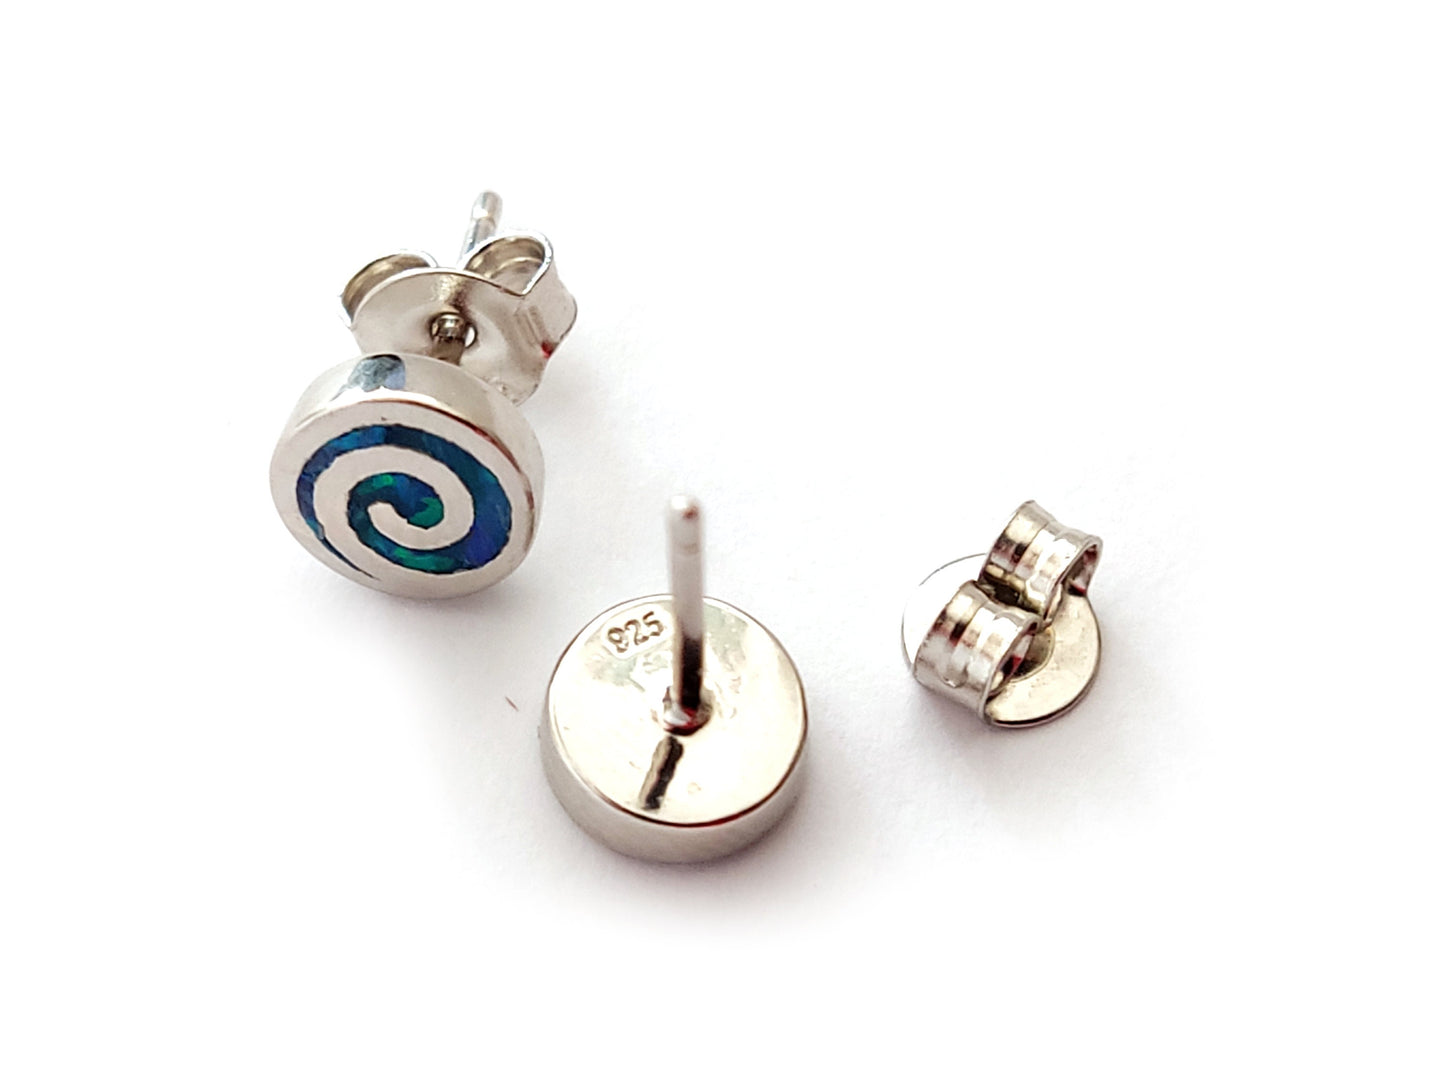 Greek Opal Earrings, Spiral Earrings, Small Earrings 7mm, Sterling Silver 925, Greek Spiral Opal Jewelry, Greek Jewelry, Round Earrings